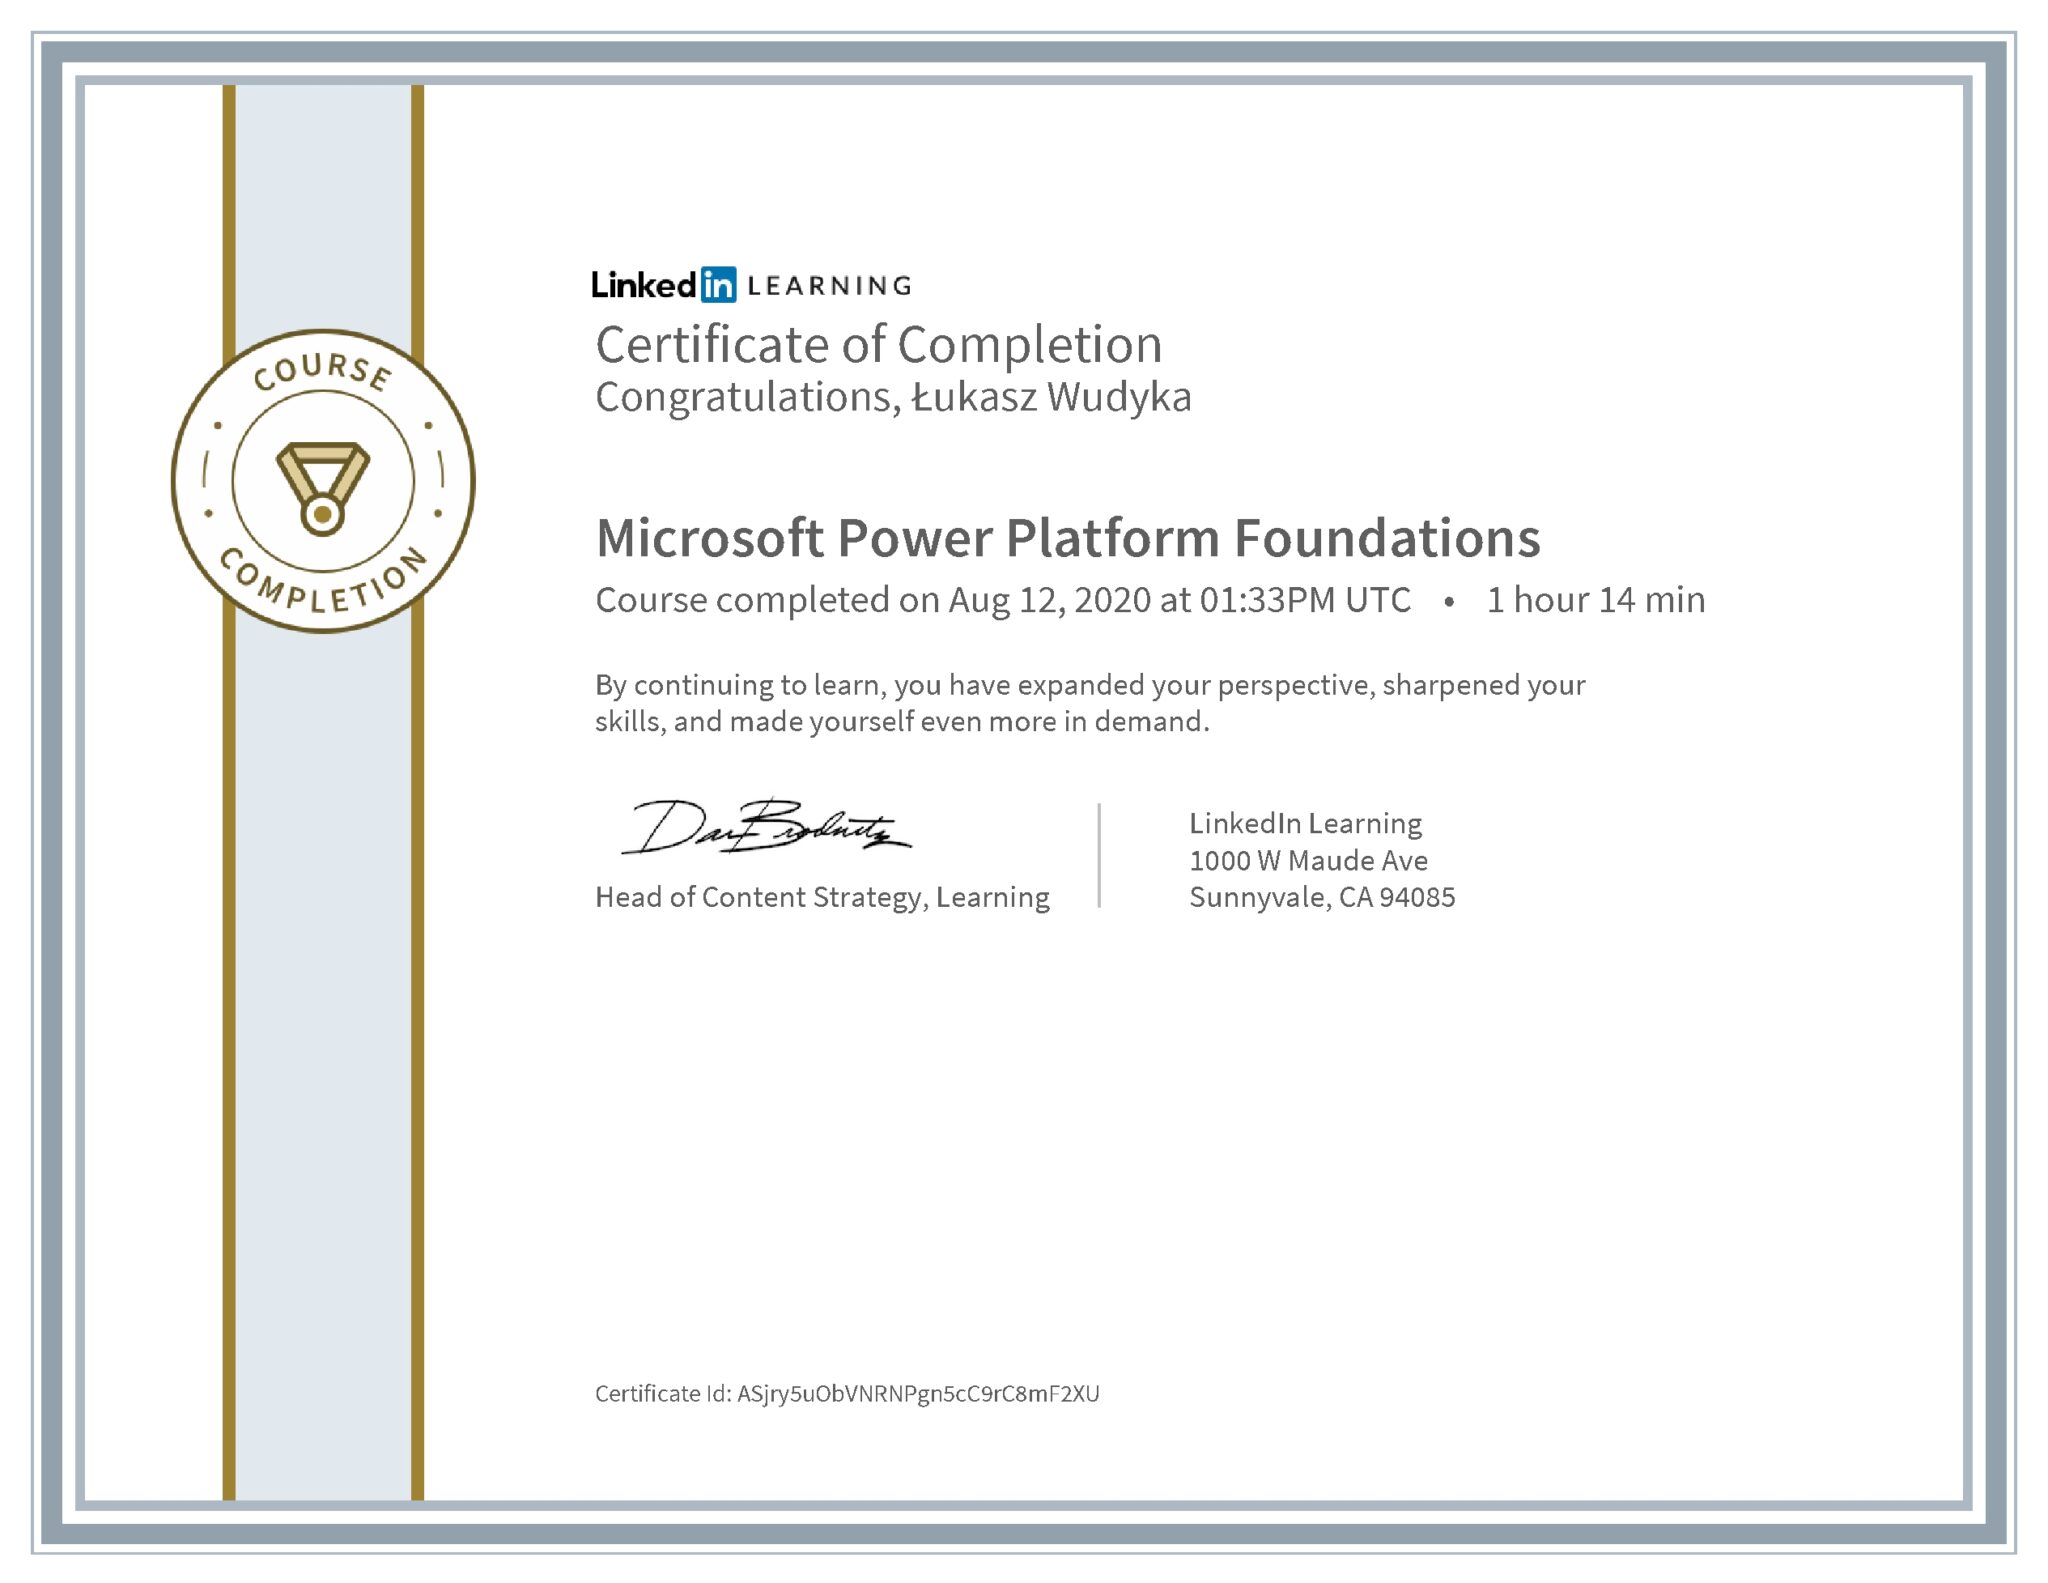 Łukasz Wudyka certyfikat LinkedIn Microsoft Power Platform Foundations